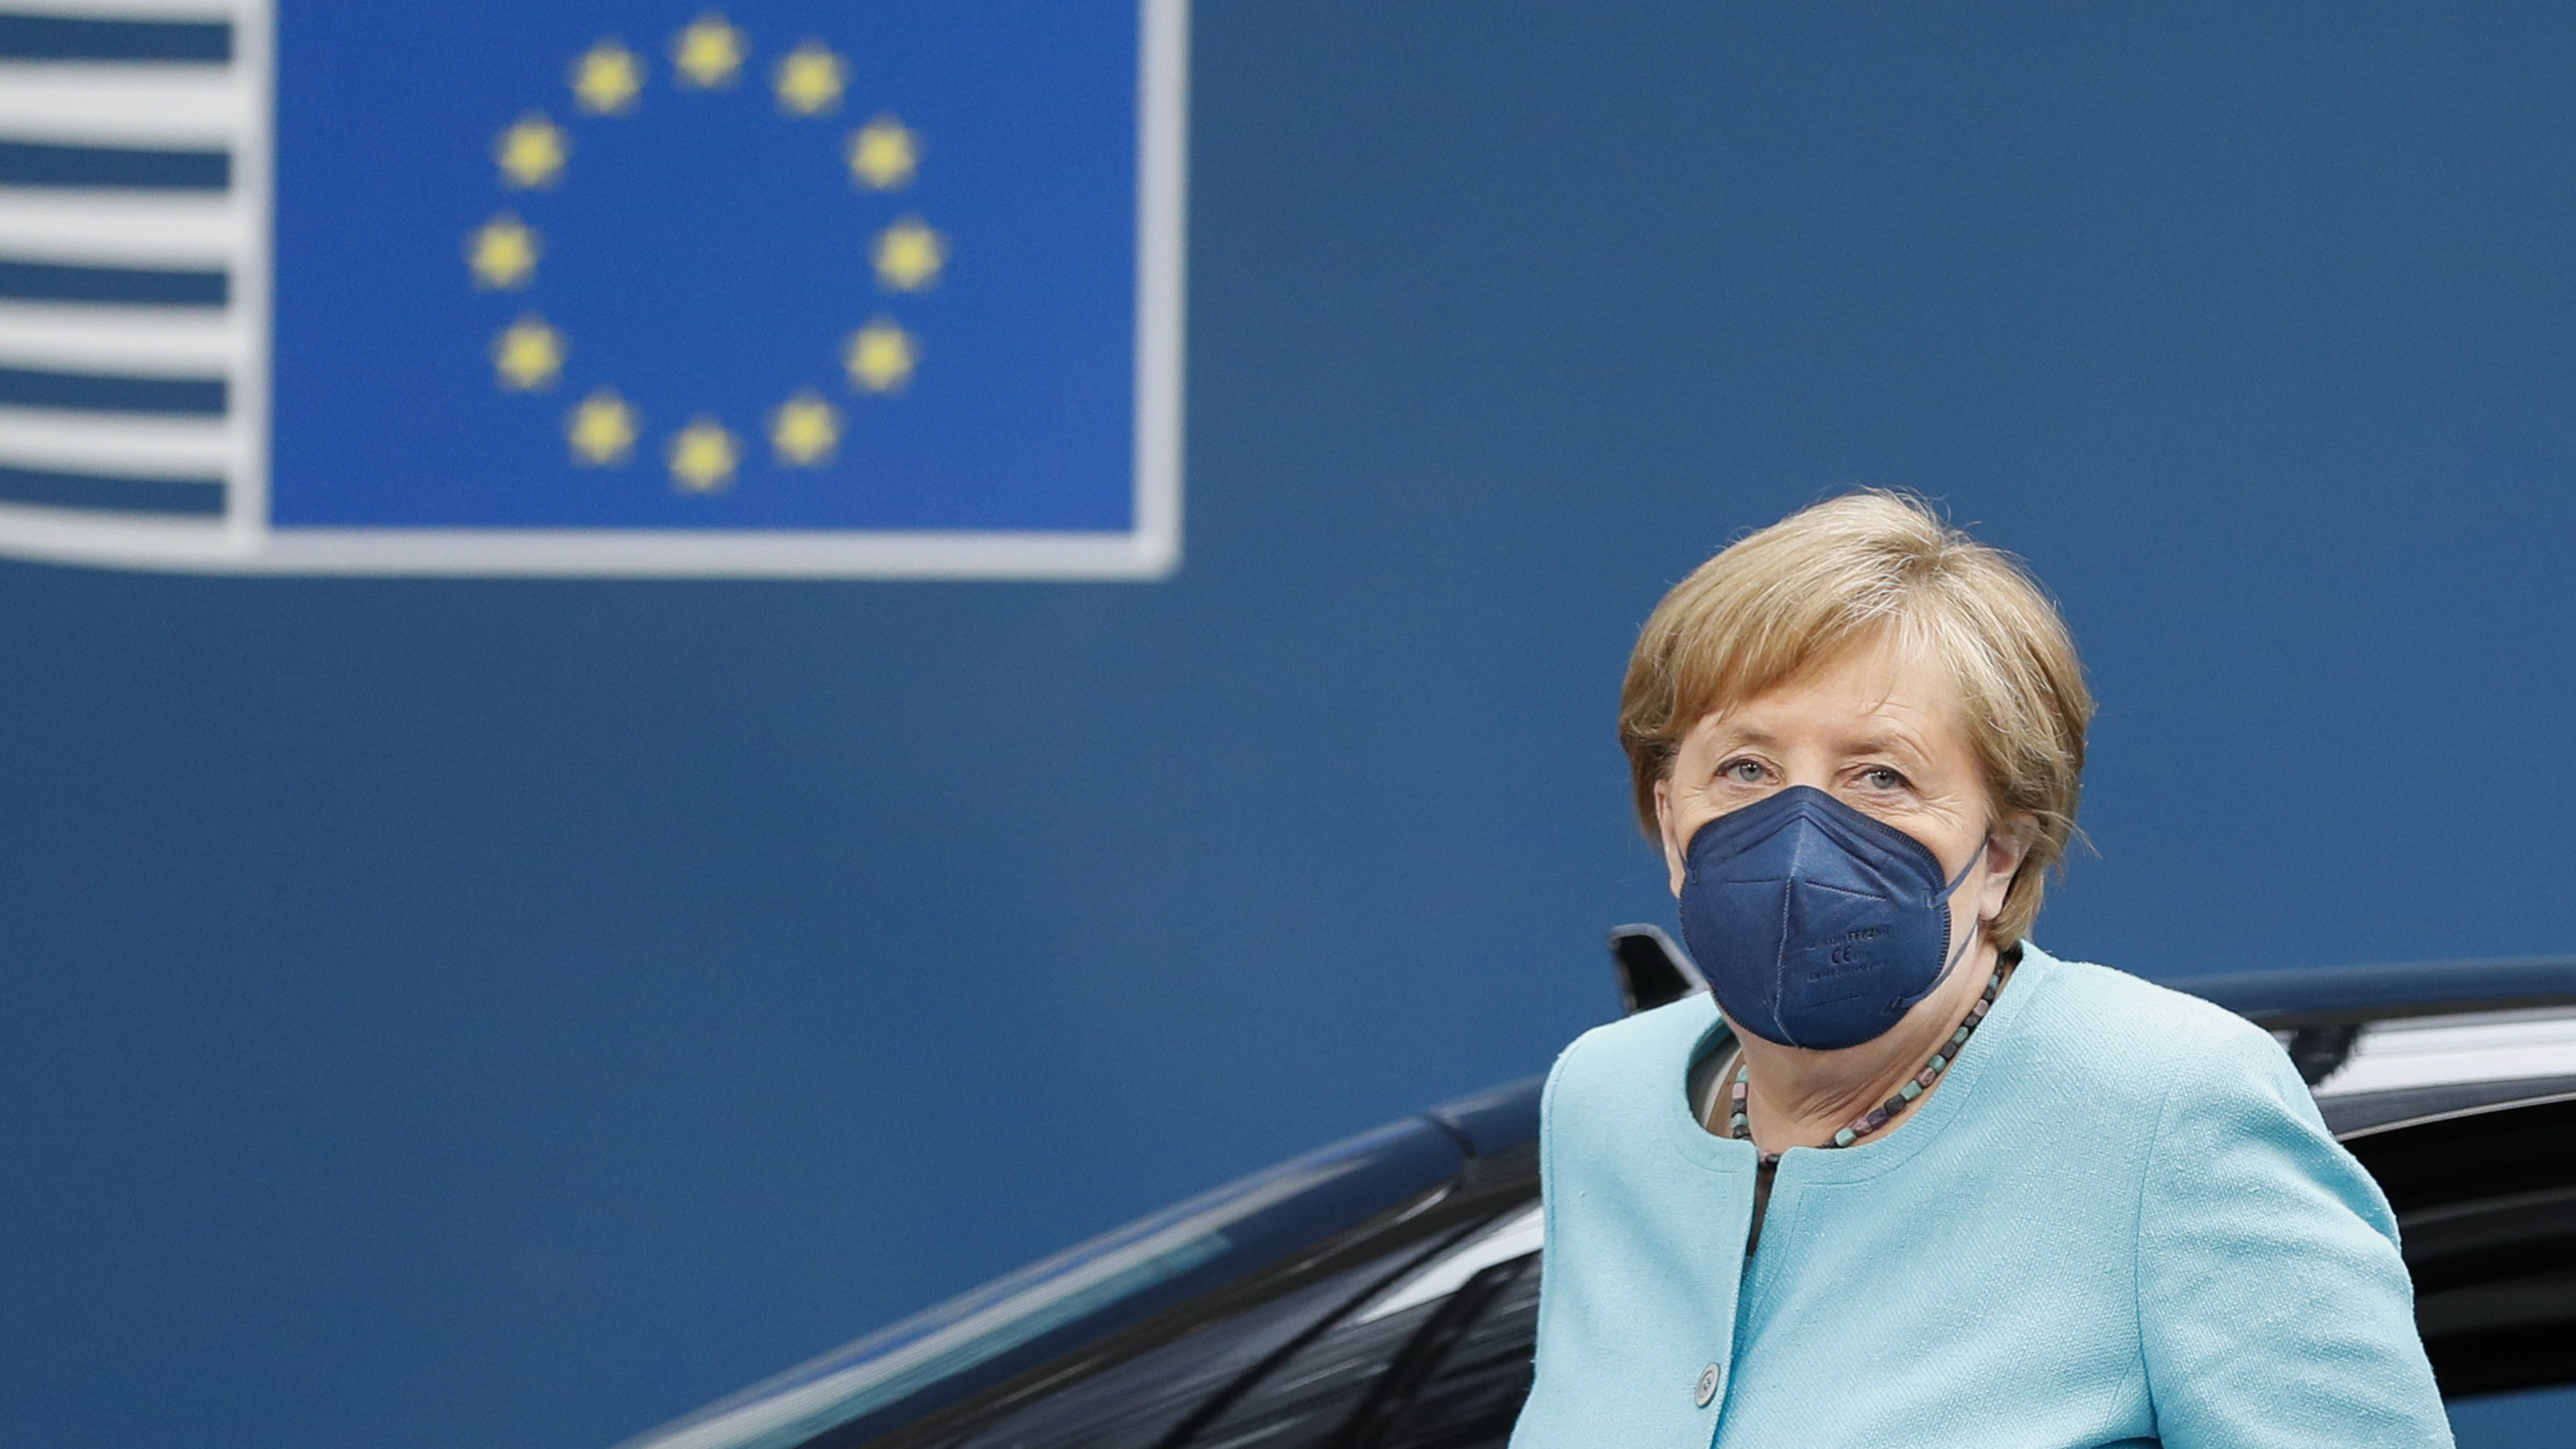 Túlélő üzemmódba kapcsolt az EU a járvány miatt: alig lesz személyes találkozó Brüsszelben